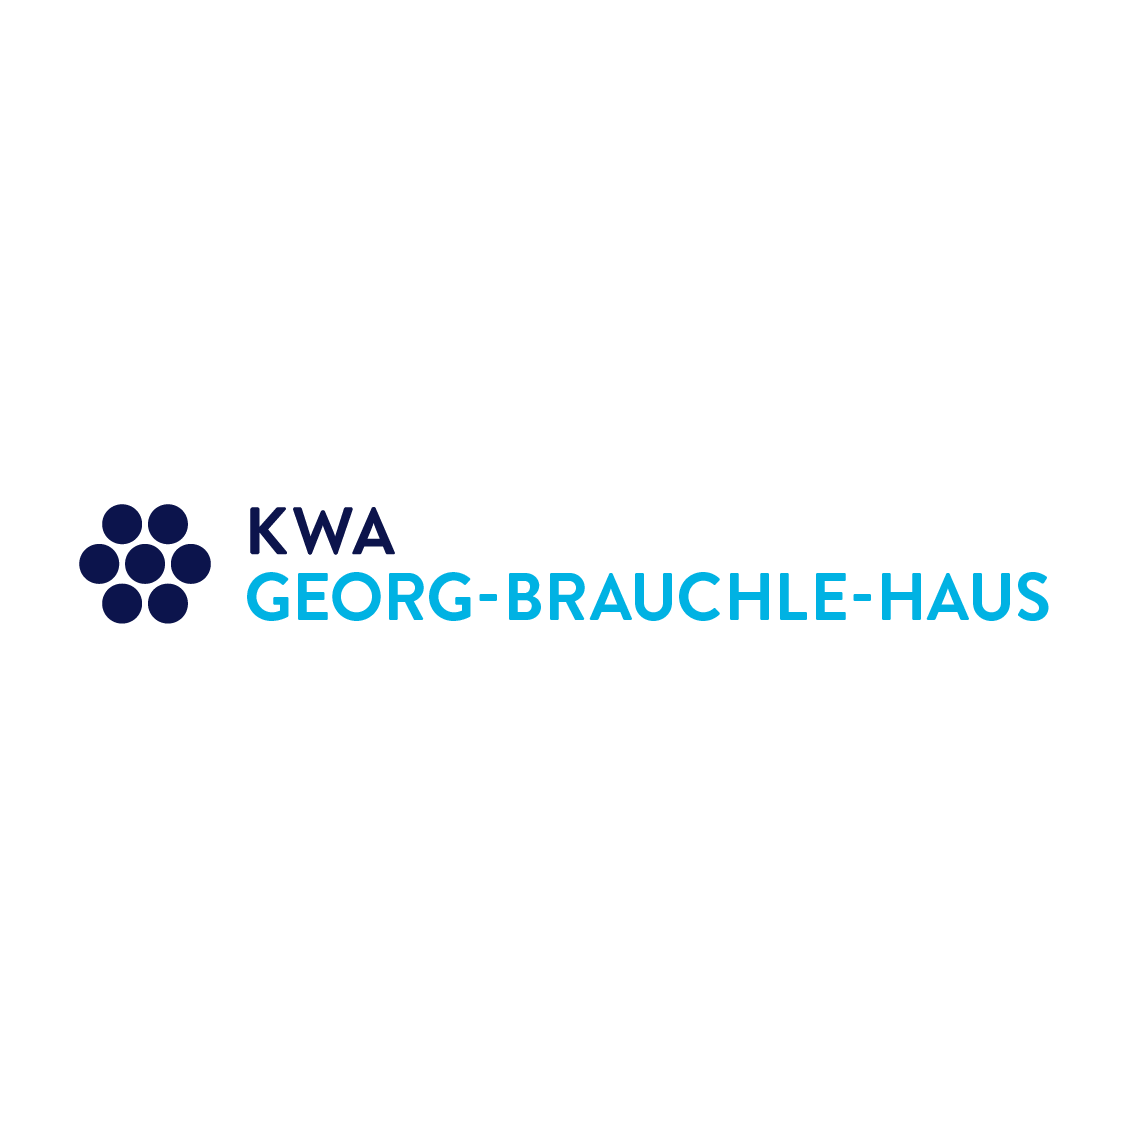 KWA Georg-Brauchle-Haus Logo